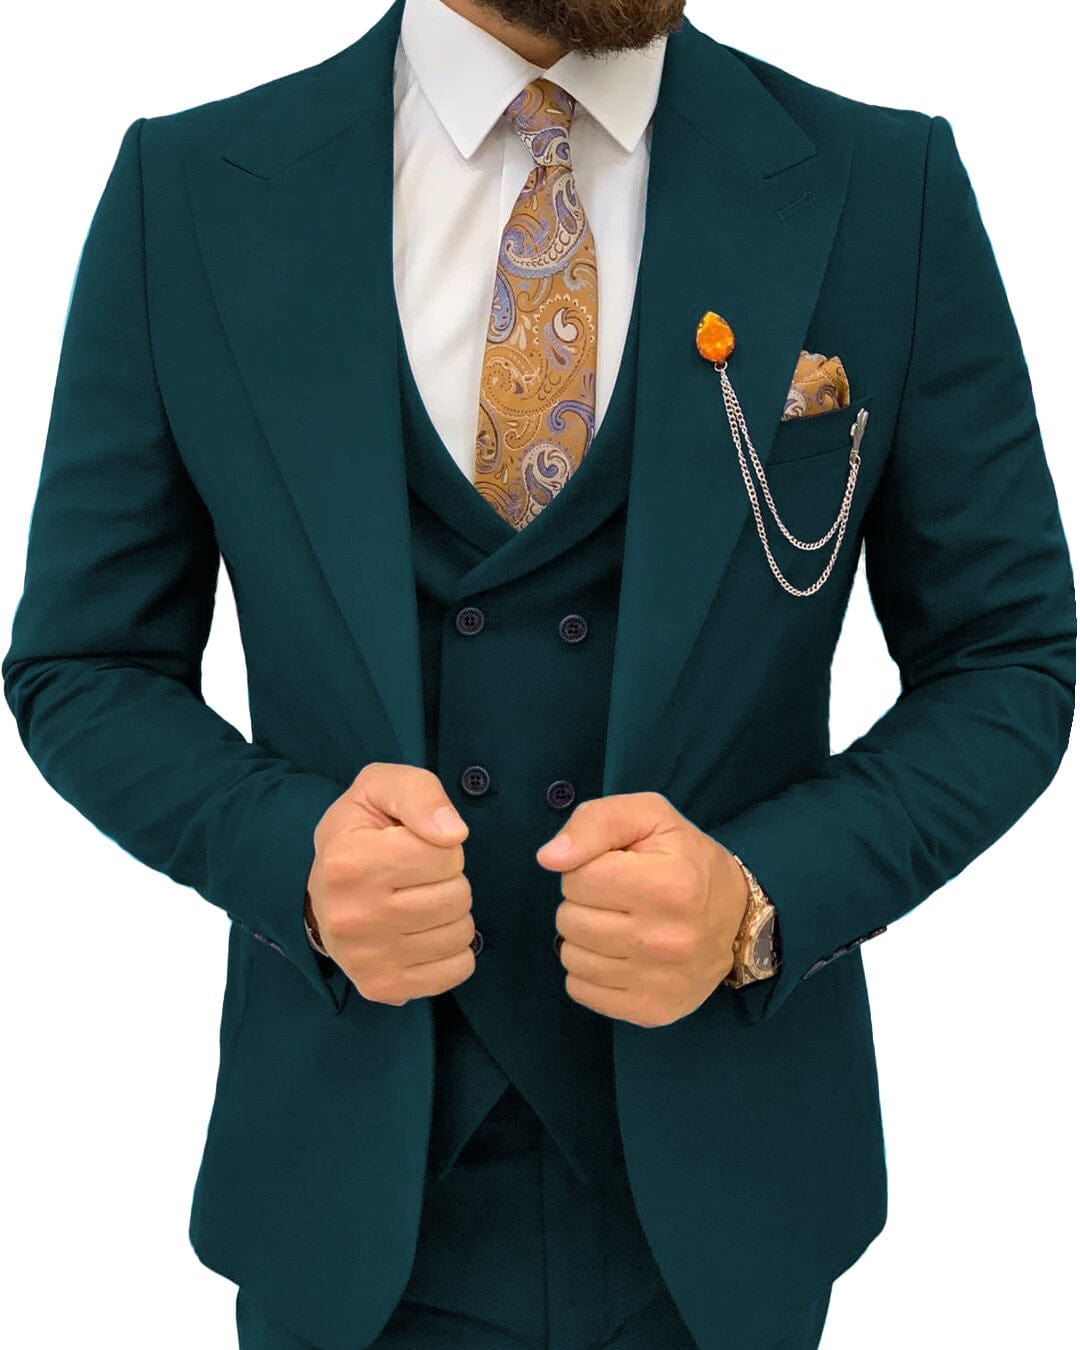 ceehuteey Men’s Suits Slim Fit 3 Piece Suit Formal Wedding Groosmen Suits Prom Tuxedo Suits (Blazer+vest+Pants)